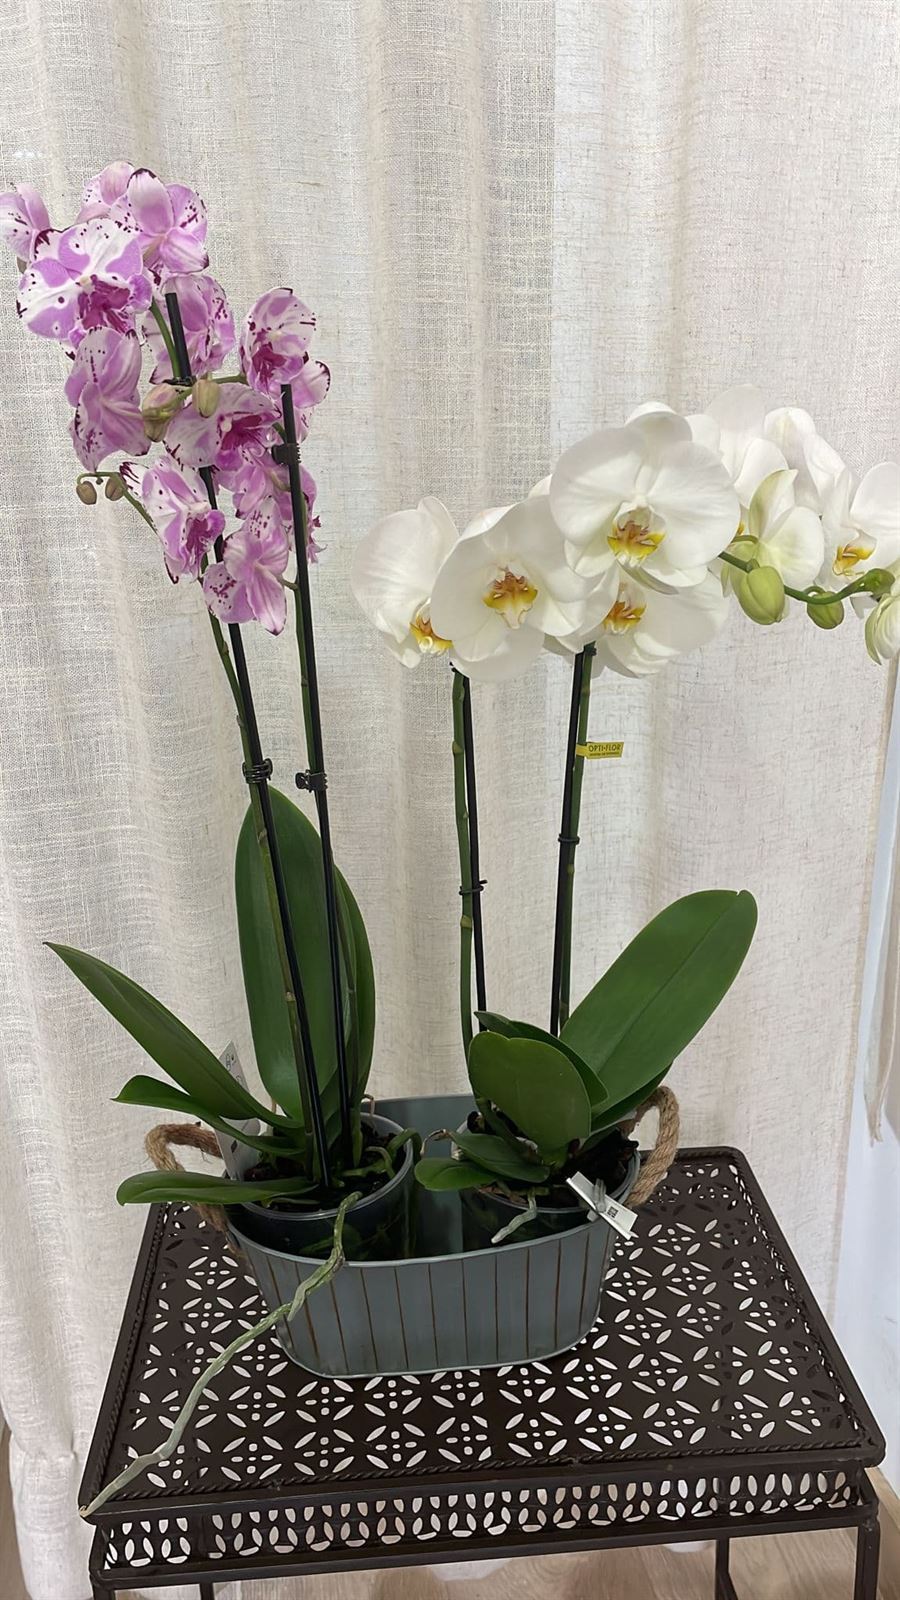 Orquídeas variadas rosas y blancas - Imagen 1